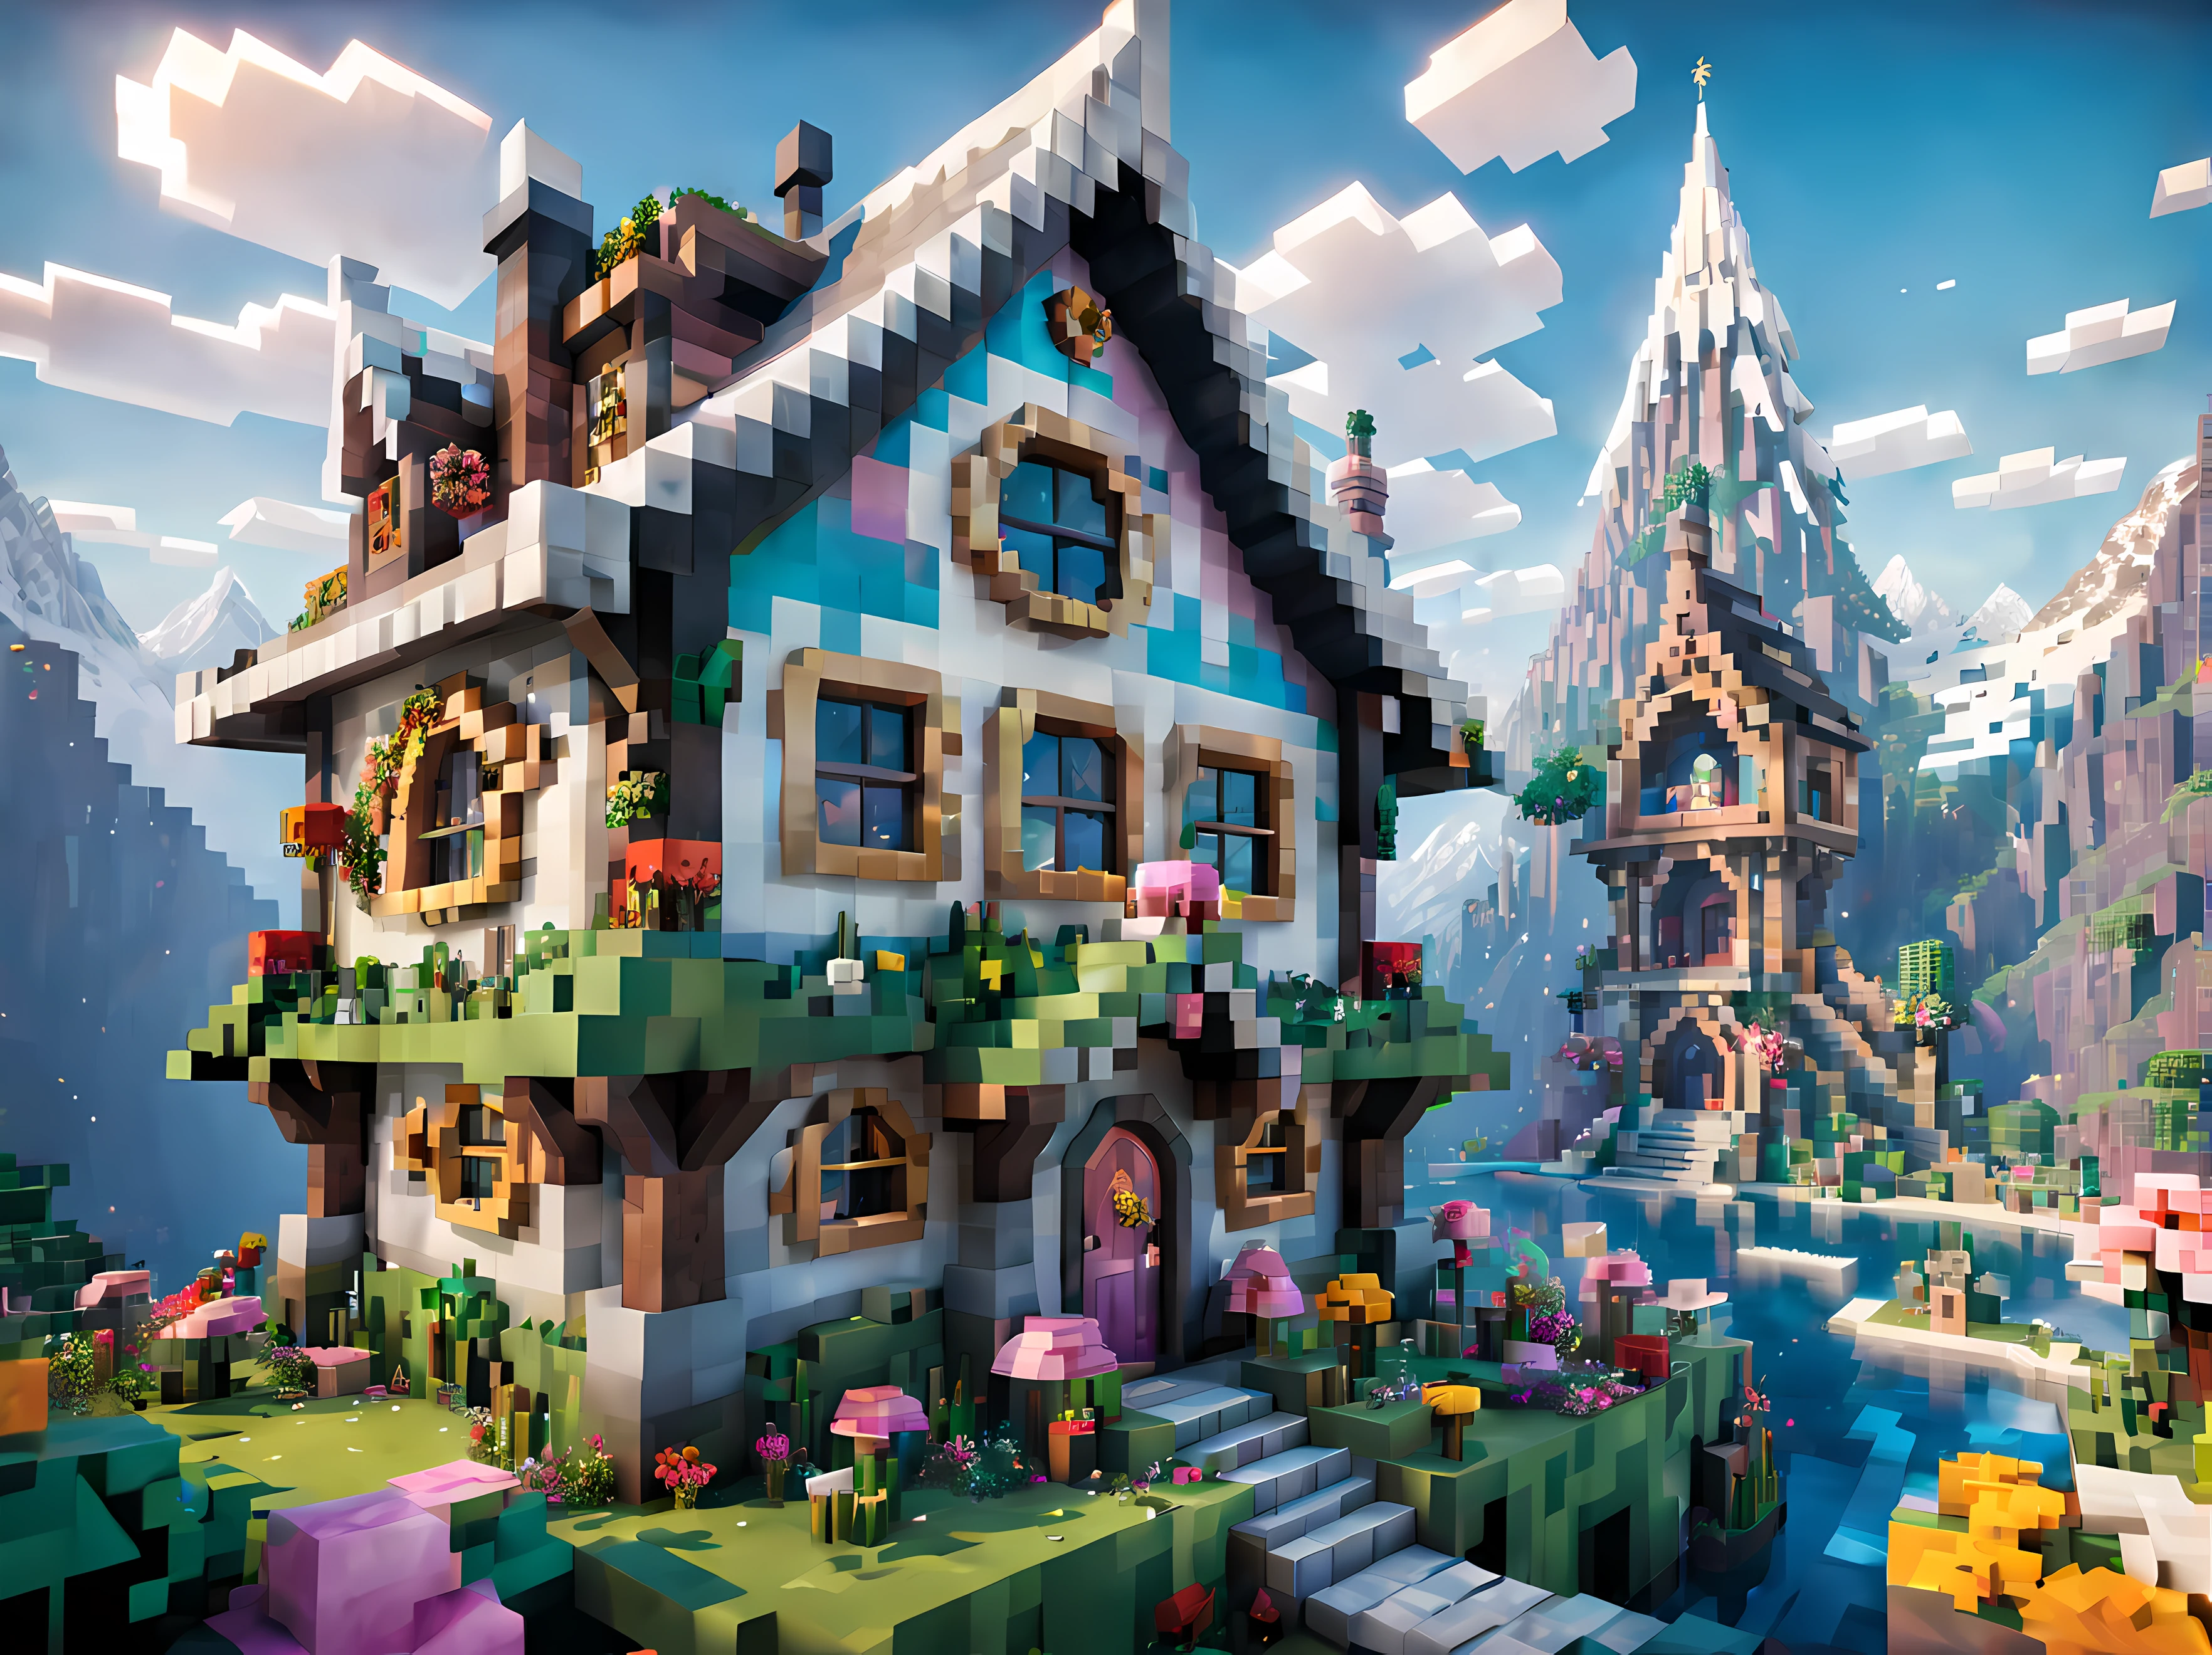 Style Minecraft (Ultraréaliste:1.3), (vue de côté:1.5) d&#39;un (grande grande cabane de fée) avec fenêtres rondes, art environnementalwork, art environnemental, (Décorations élégantes), (Livre mystique), (Beau:1.4), (attractif:1.3), épique enneigé (Montagnes), Nature estivale, En bloc, pixelisé, couleurs vives, (girly orné:1.3), fleurs, (ciel lumineux ciel), Particules éthérées